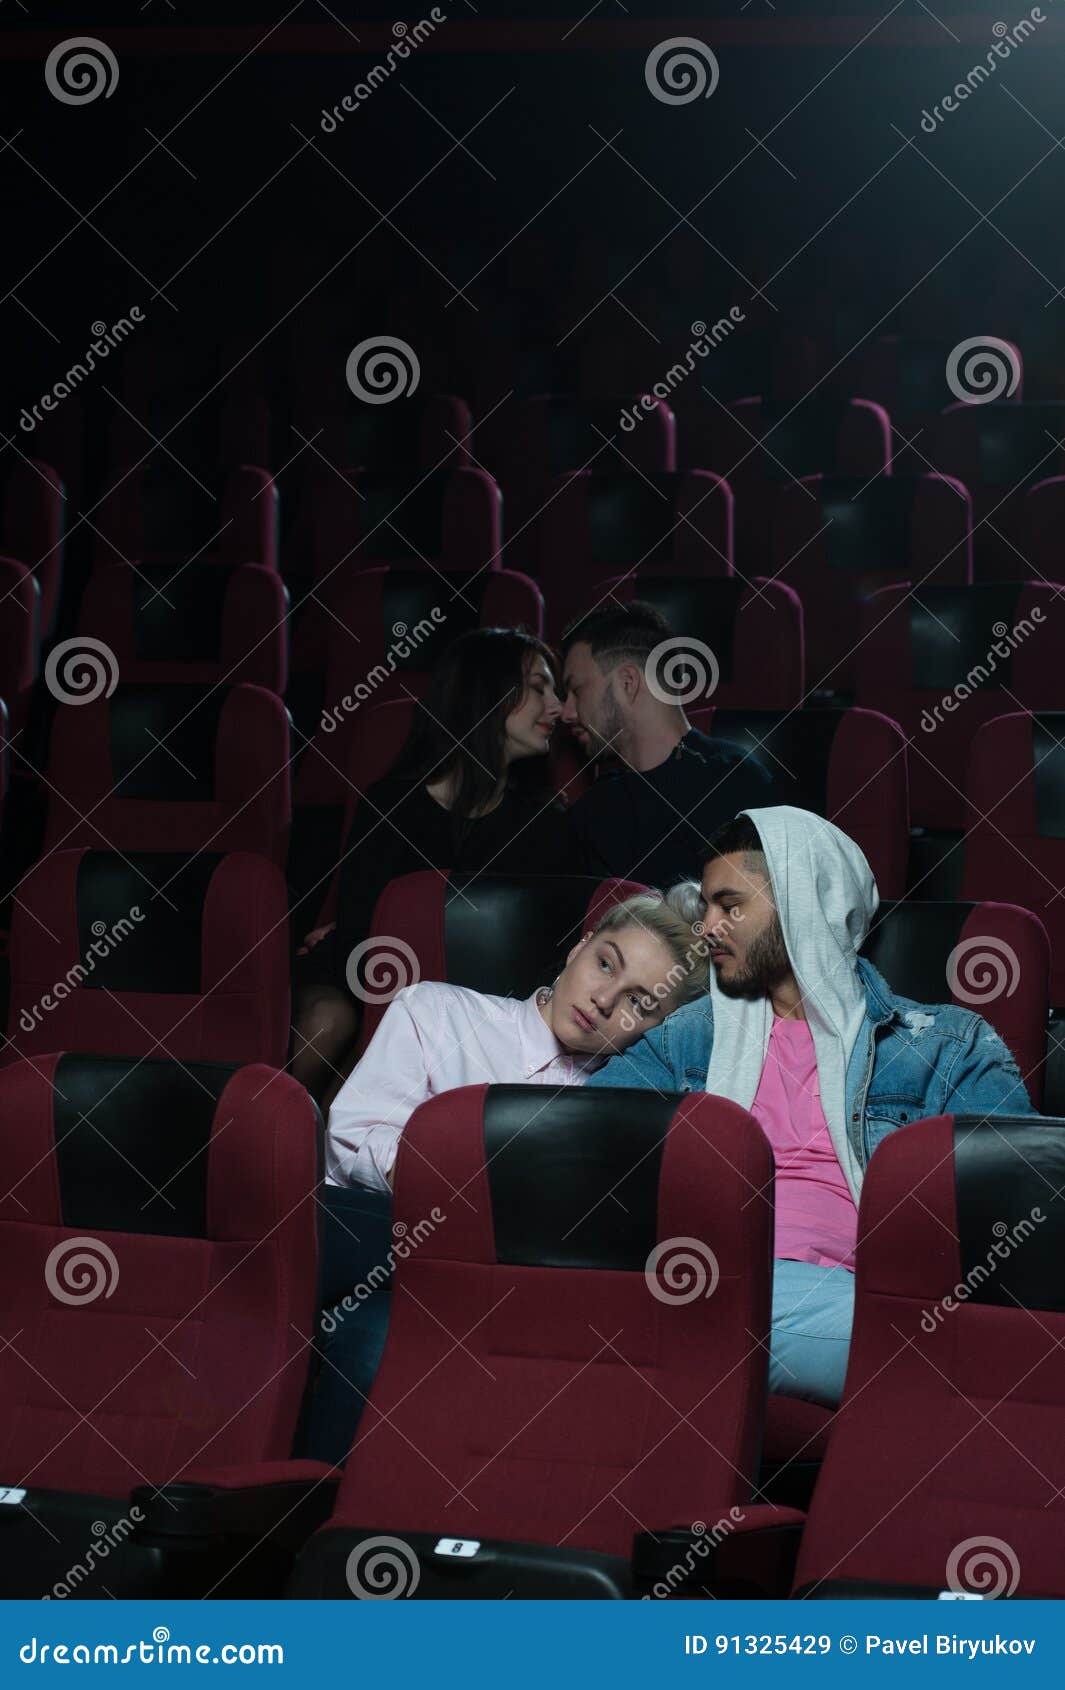 Кинотеатр обними расписание. Объятия в кинотеатре. Романтическая пара в кинотеатре. Поцелуй пары в кинотеатре. Пара в театре.